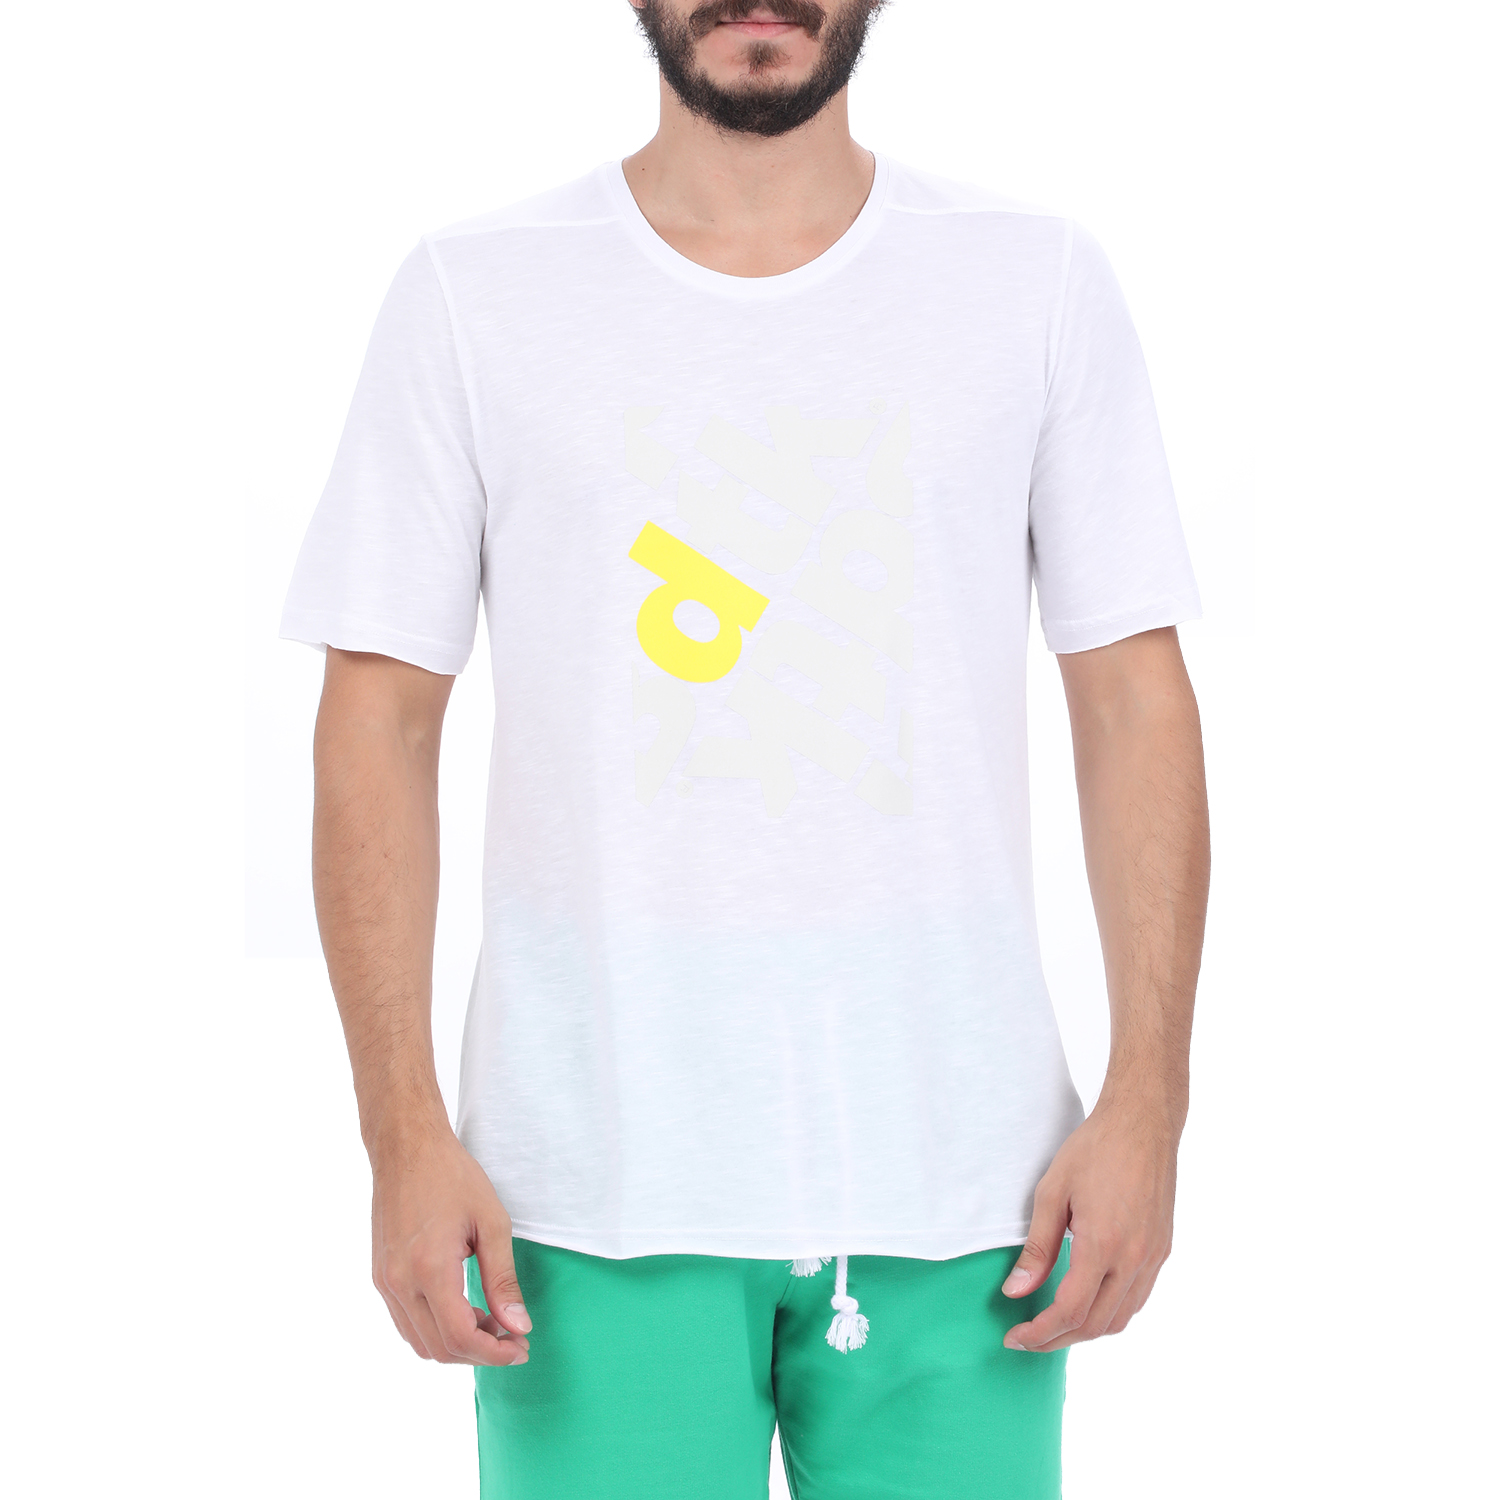 Ανδρικά/Ρούχα/Αθλητικά/T-shirt BODYTALK - Ανδρικό t-shirt BODYTALK λευκό